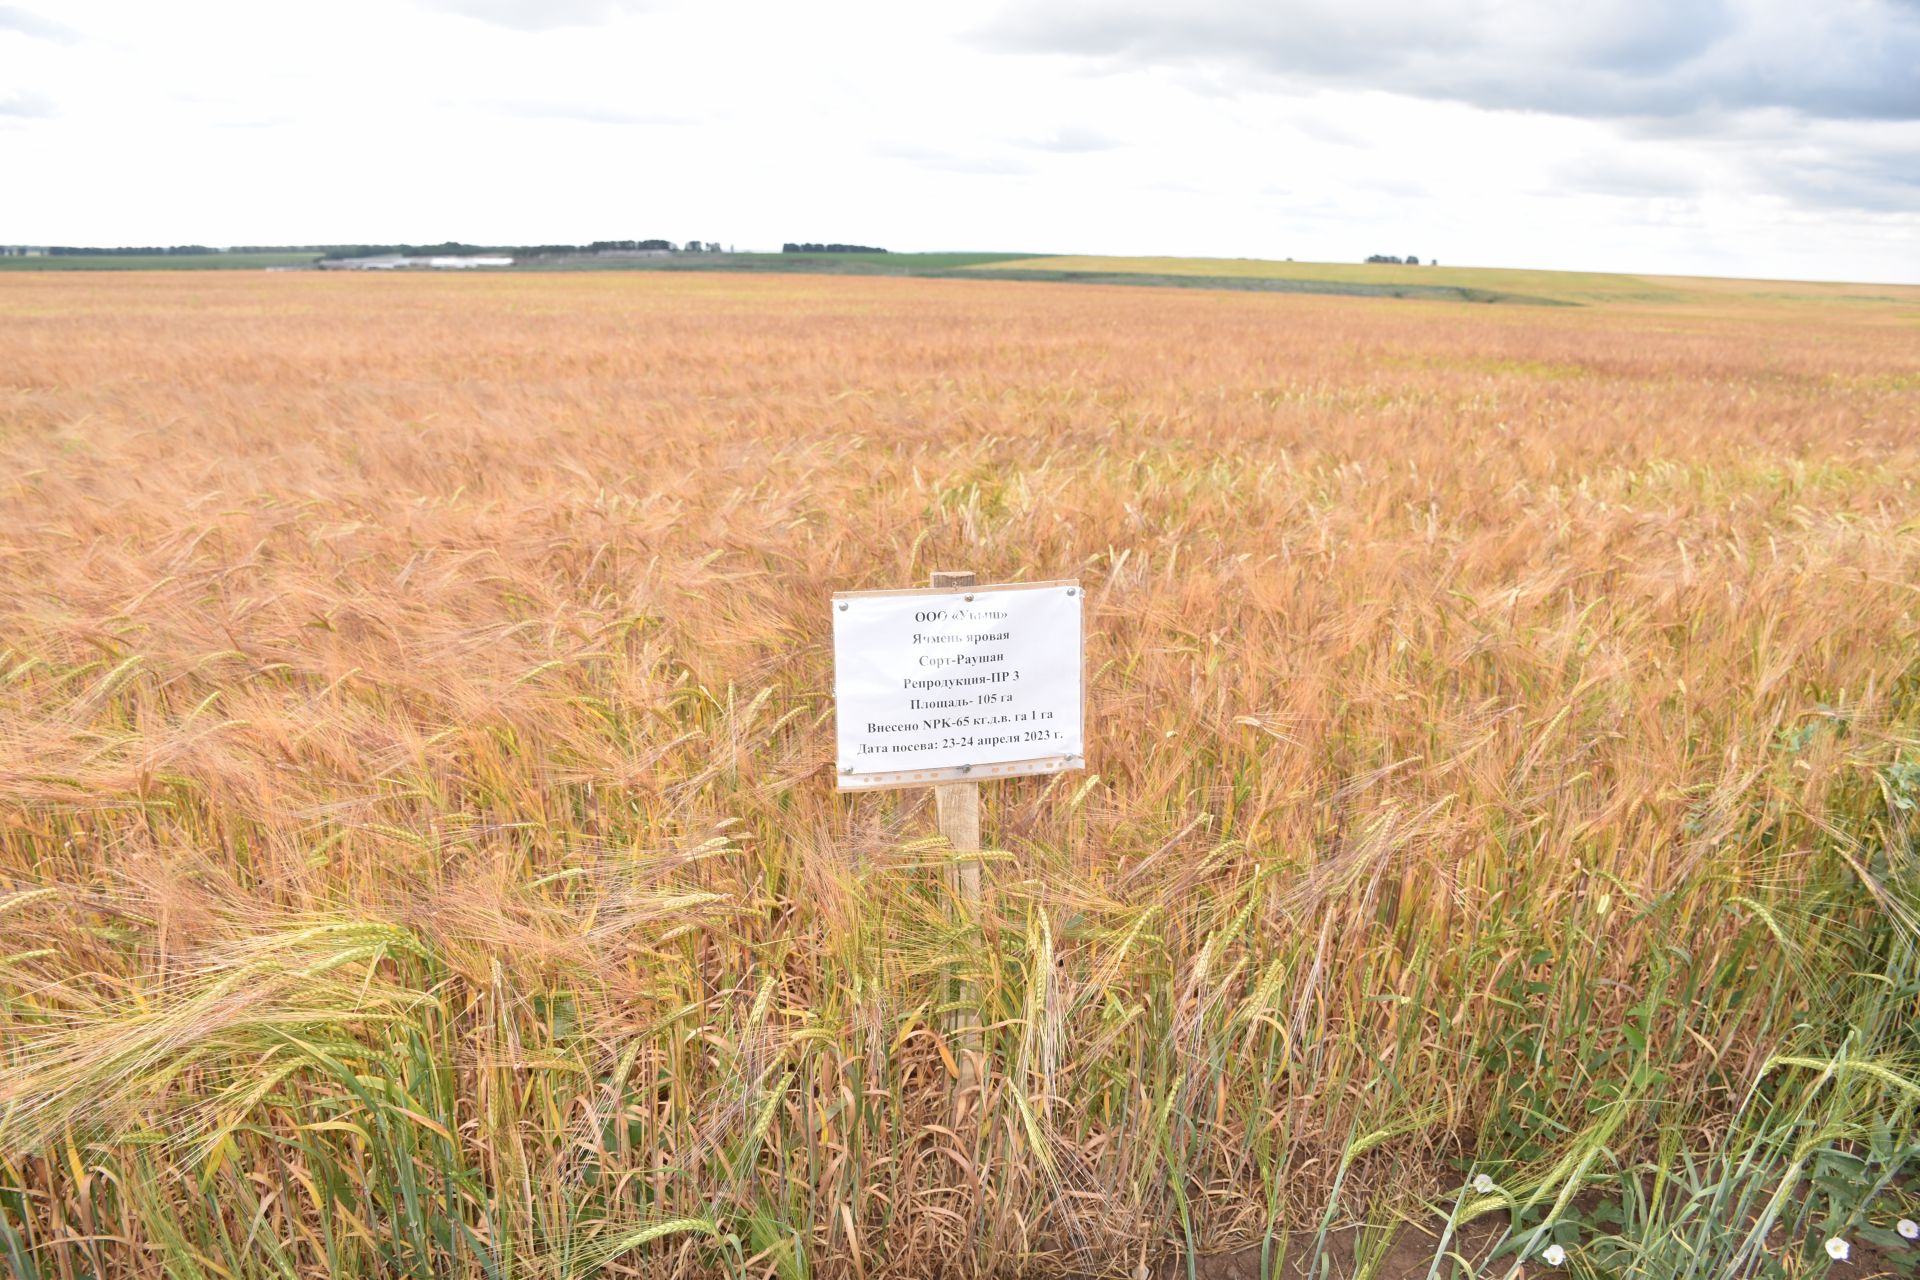 Руководство Кукморского района и аграрии ознакомились с состоянием полей